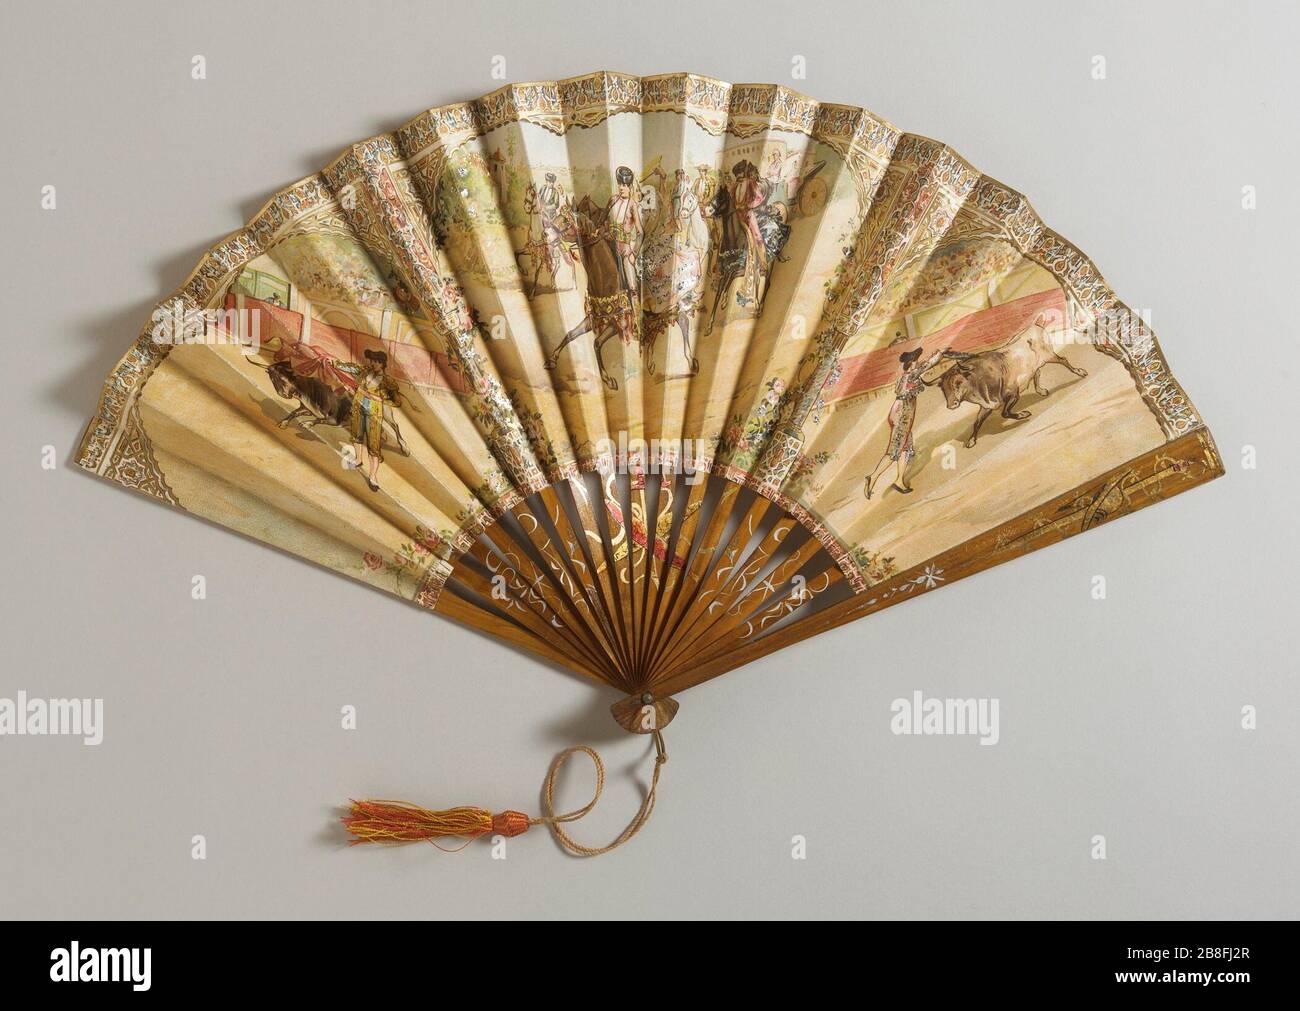 Falten Ventilator; Englisch: Kuba, 1899 Kostüme, Zubehör Papier Blatt; Holz  Sticks und Wachen; metall nieten und